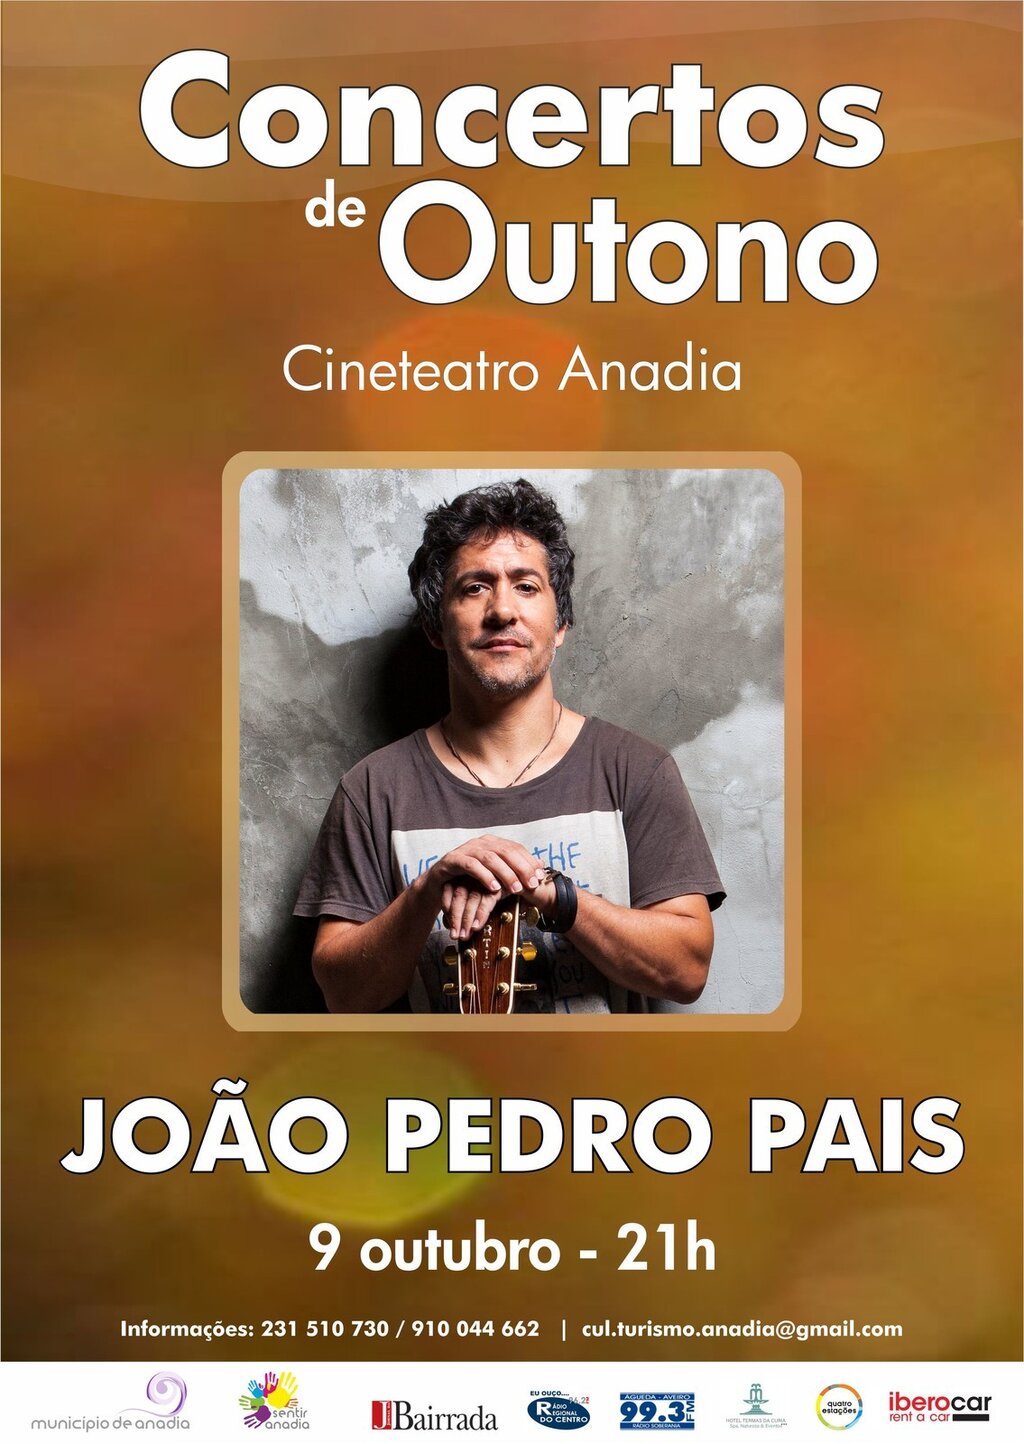 João Pedro Pais - "Concerto de Outono"